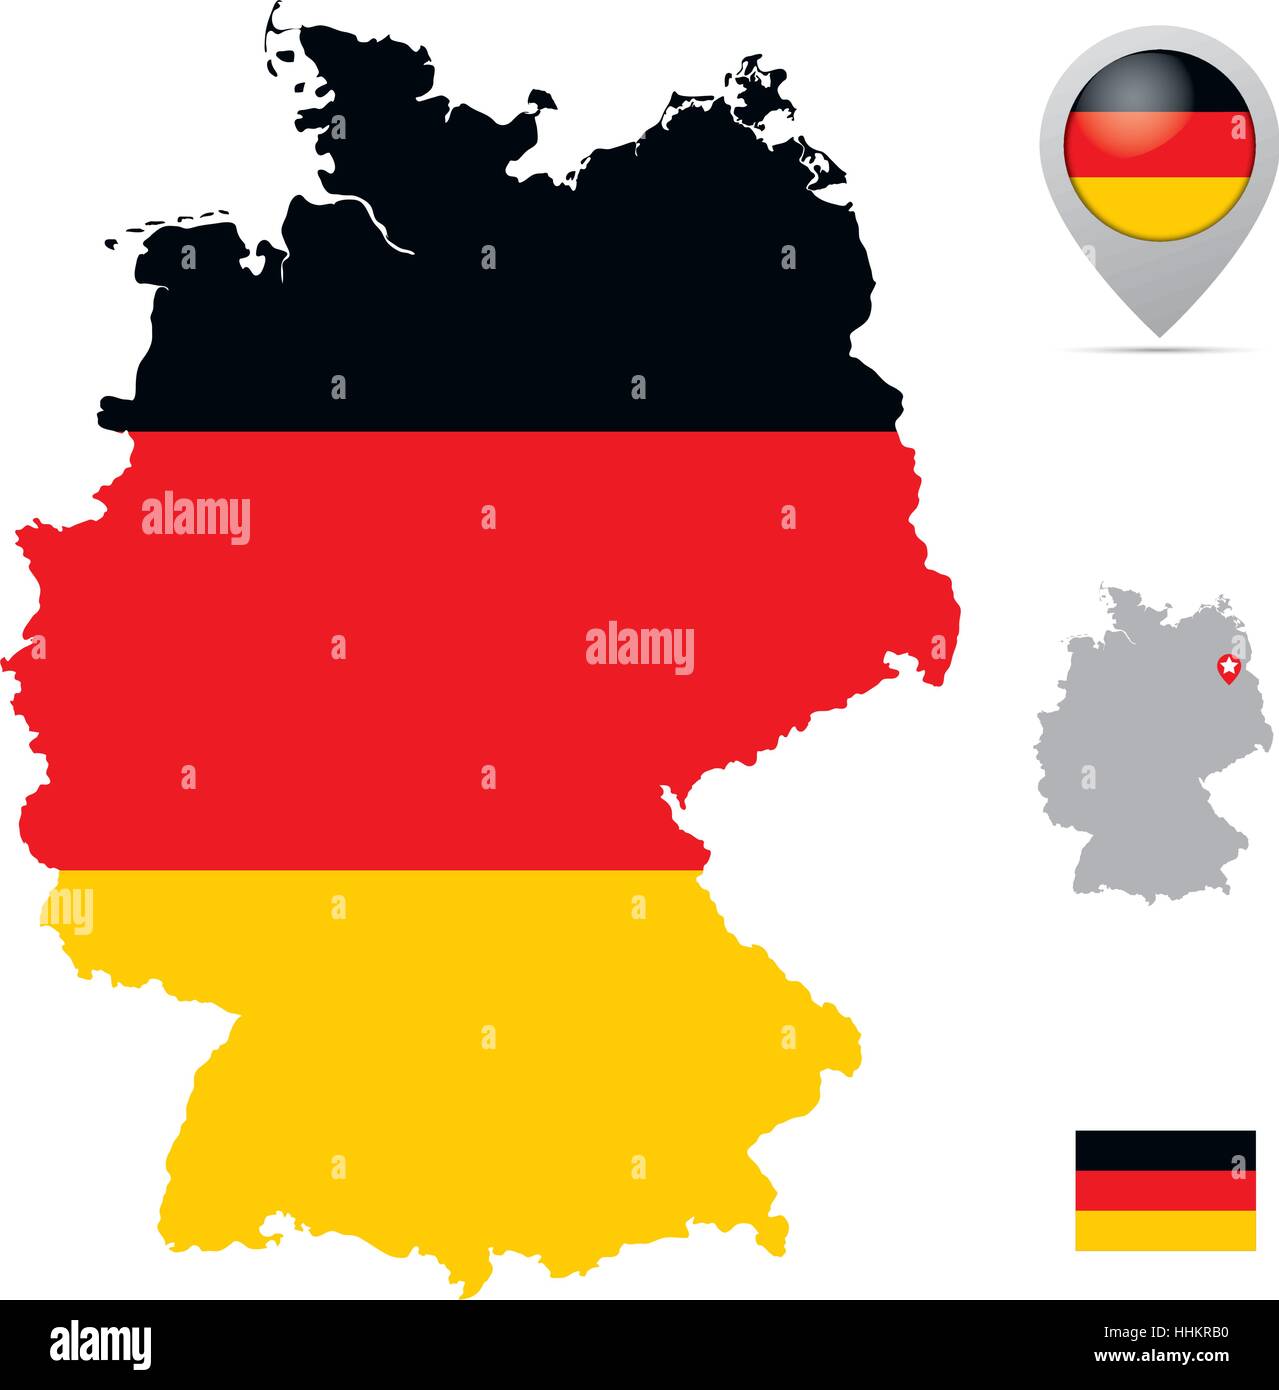 Germania mappa in bandiera nazionale colori, bandiera, marker e la posizione della sua capitale Berlino. Illustrazione Vettoriale